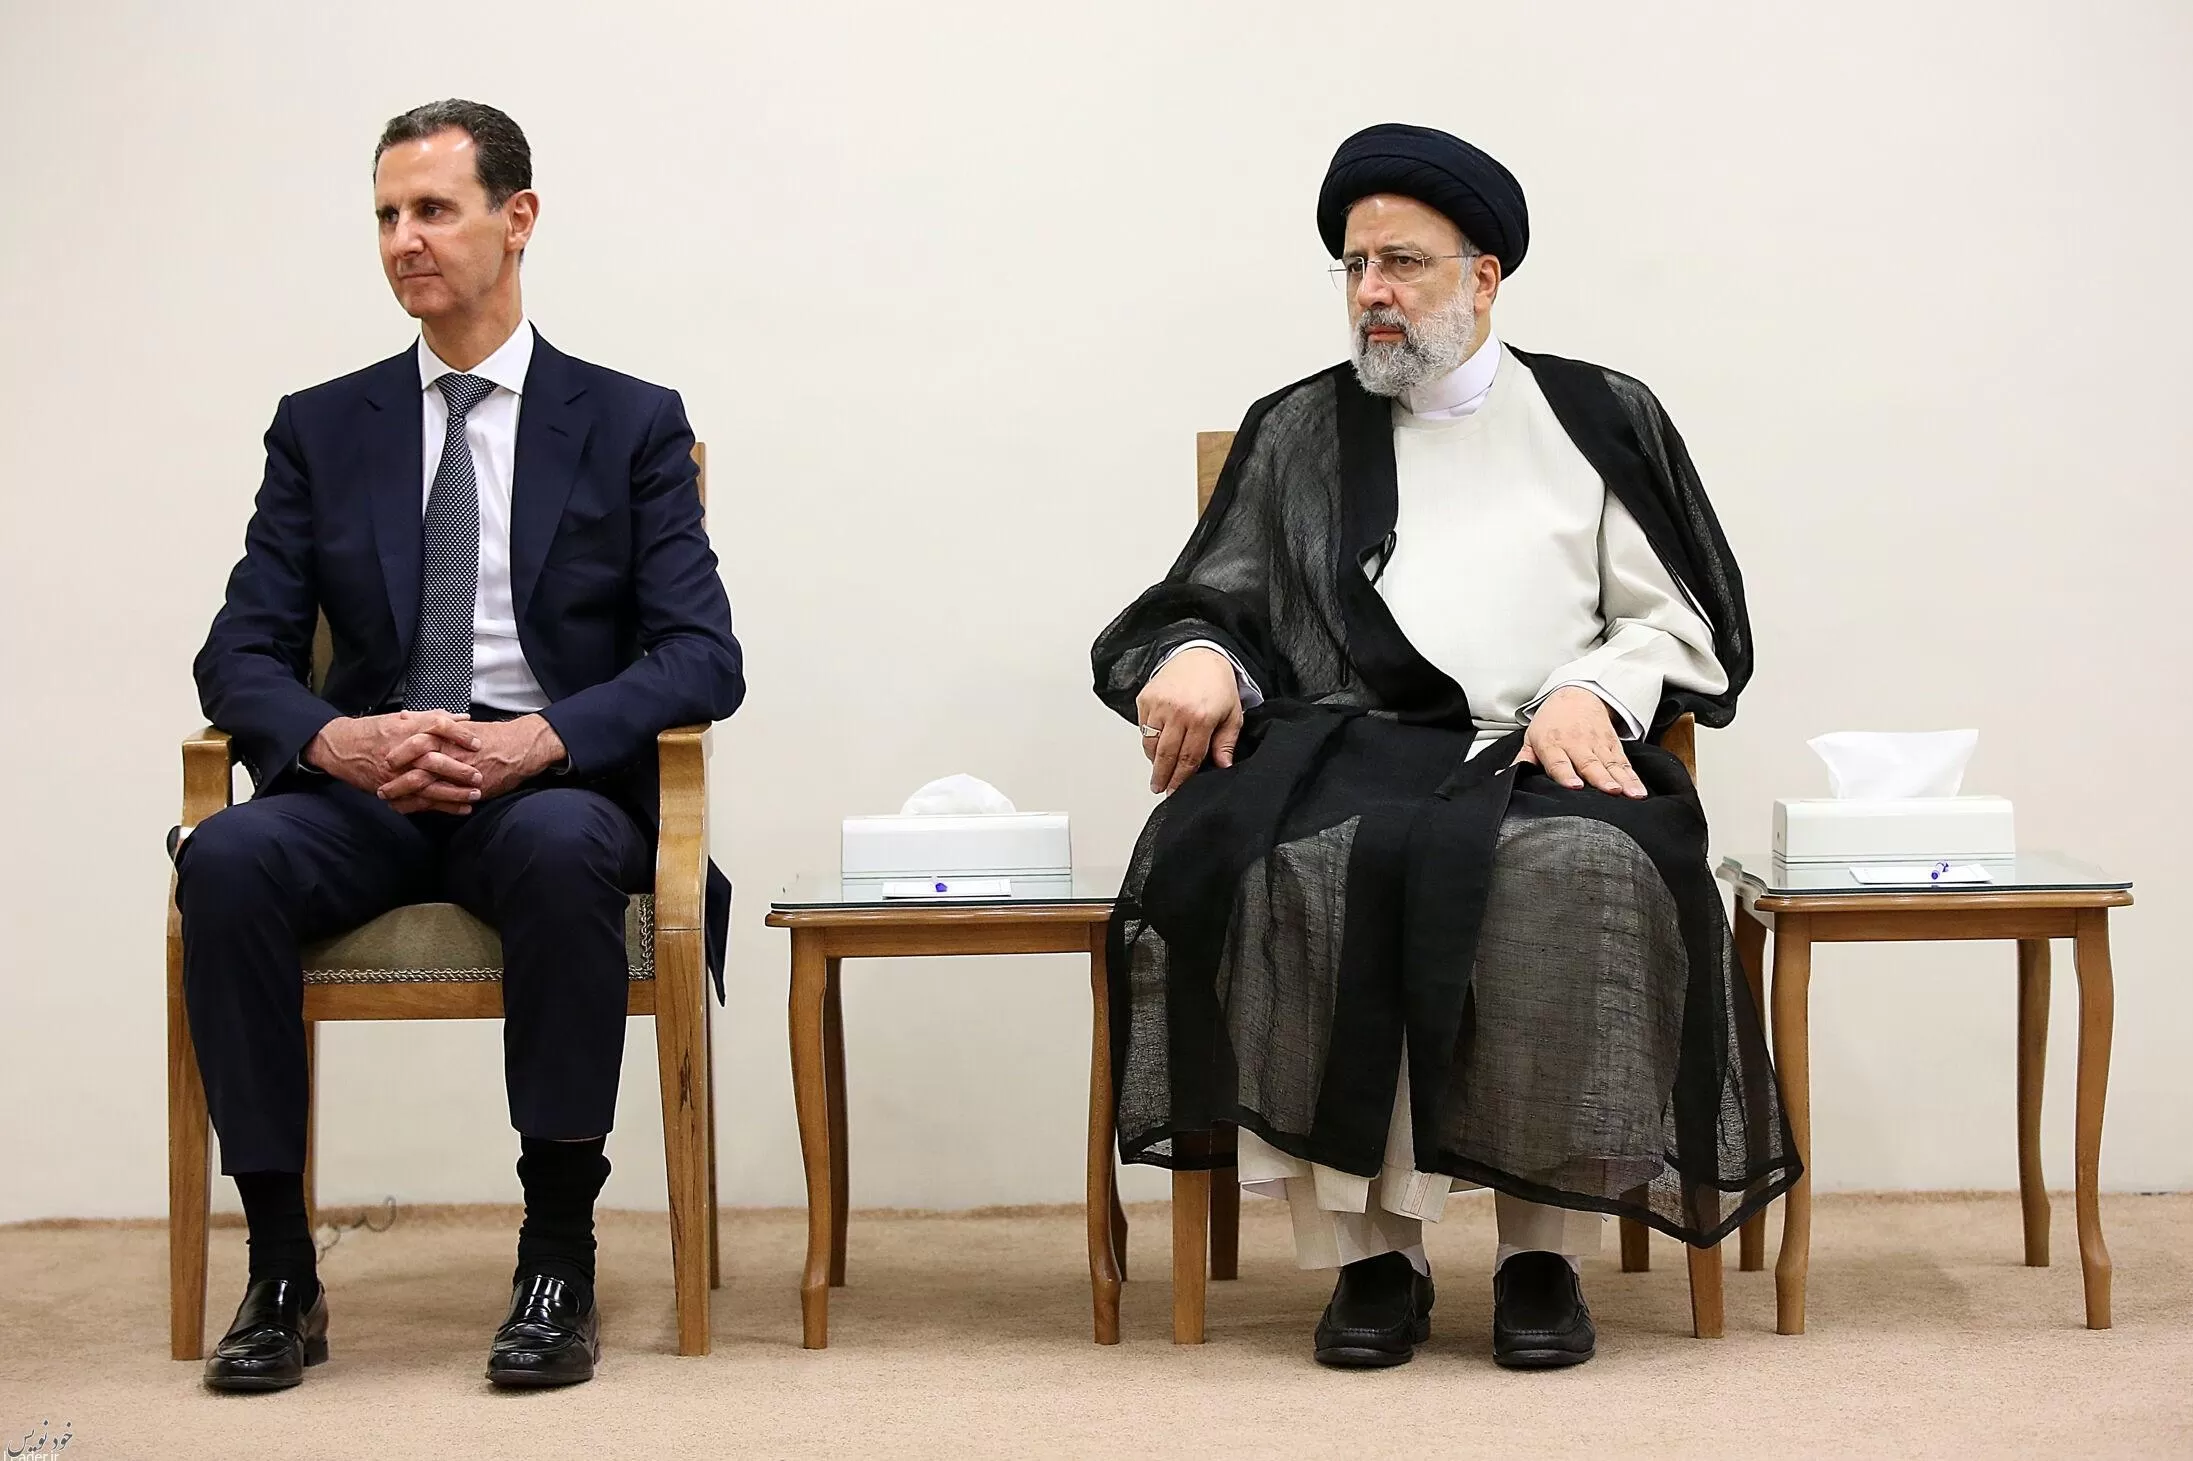 بشار اسد با رهبر معظم انقلاب و رئیسی در تهران دیدار کرد